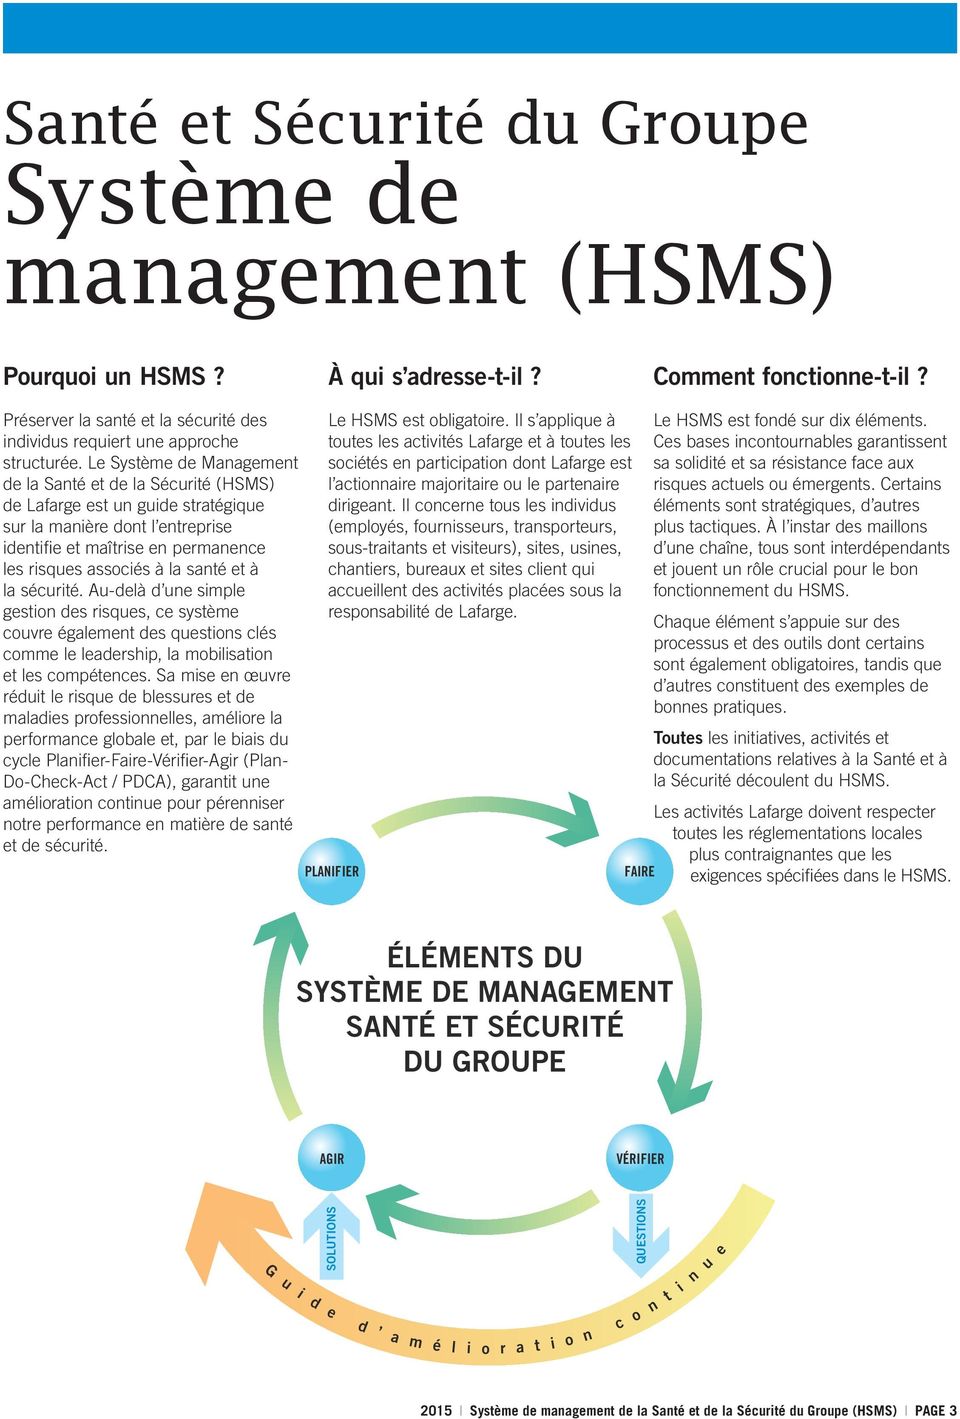 Le Système de Management de la Santé et de la Sécurité (HSMS) de Lafarge est un guide stratégique sur la manière dont l entreprise identifie et maîtrise en permanence les risques associés à la santé